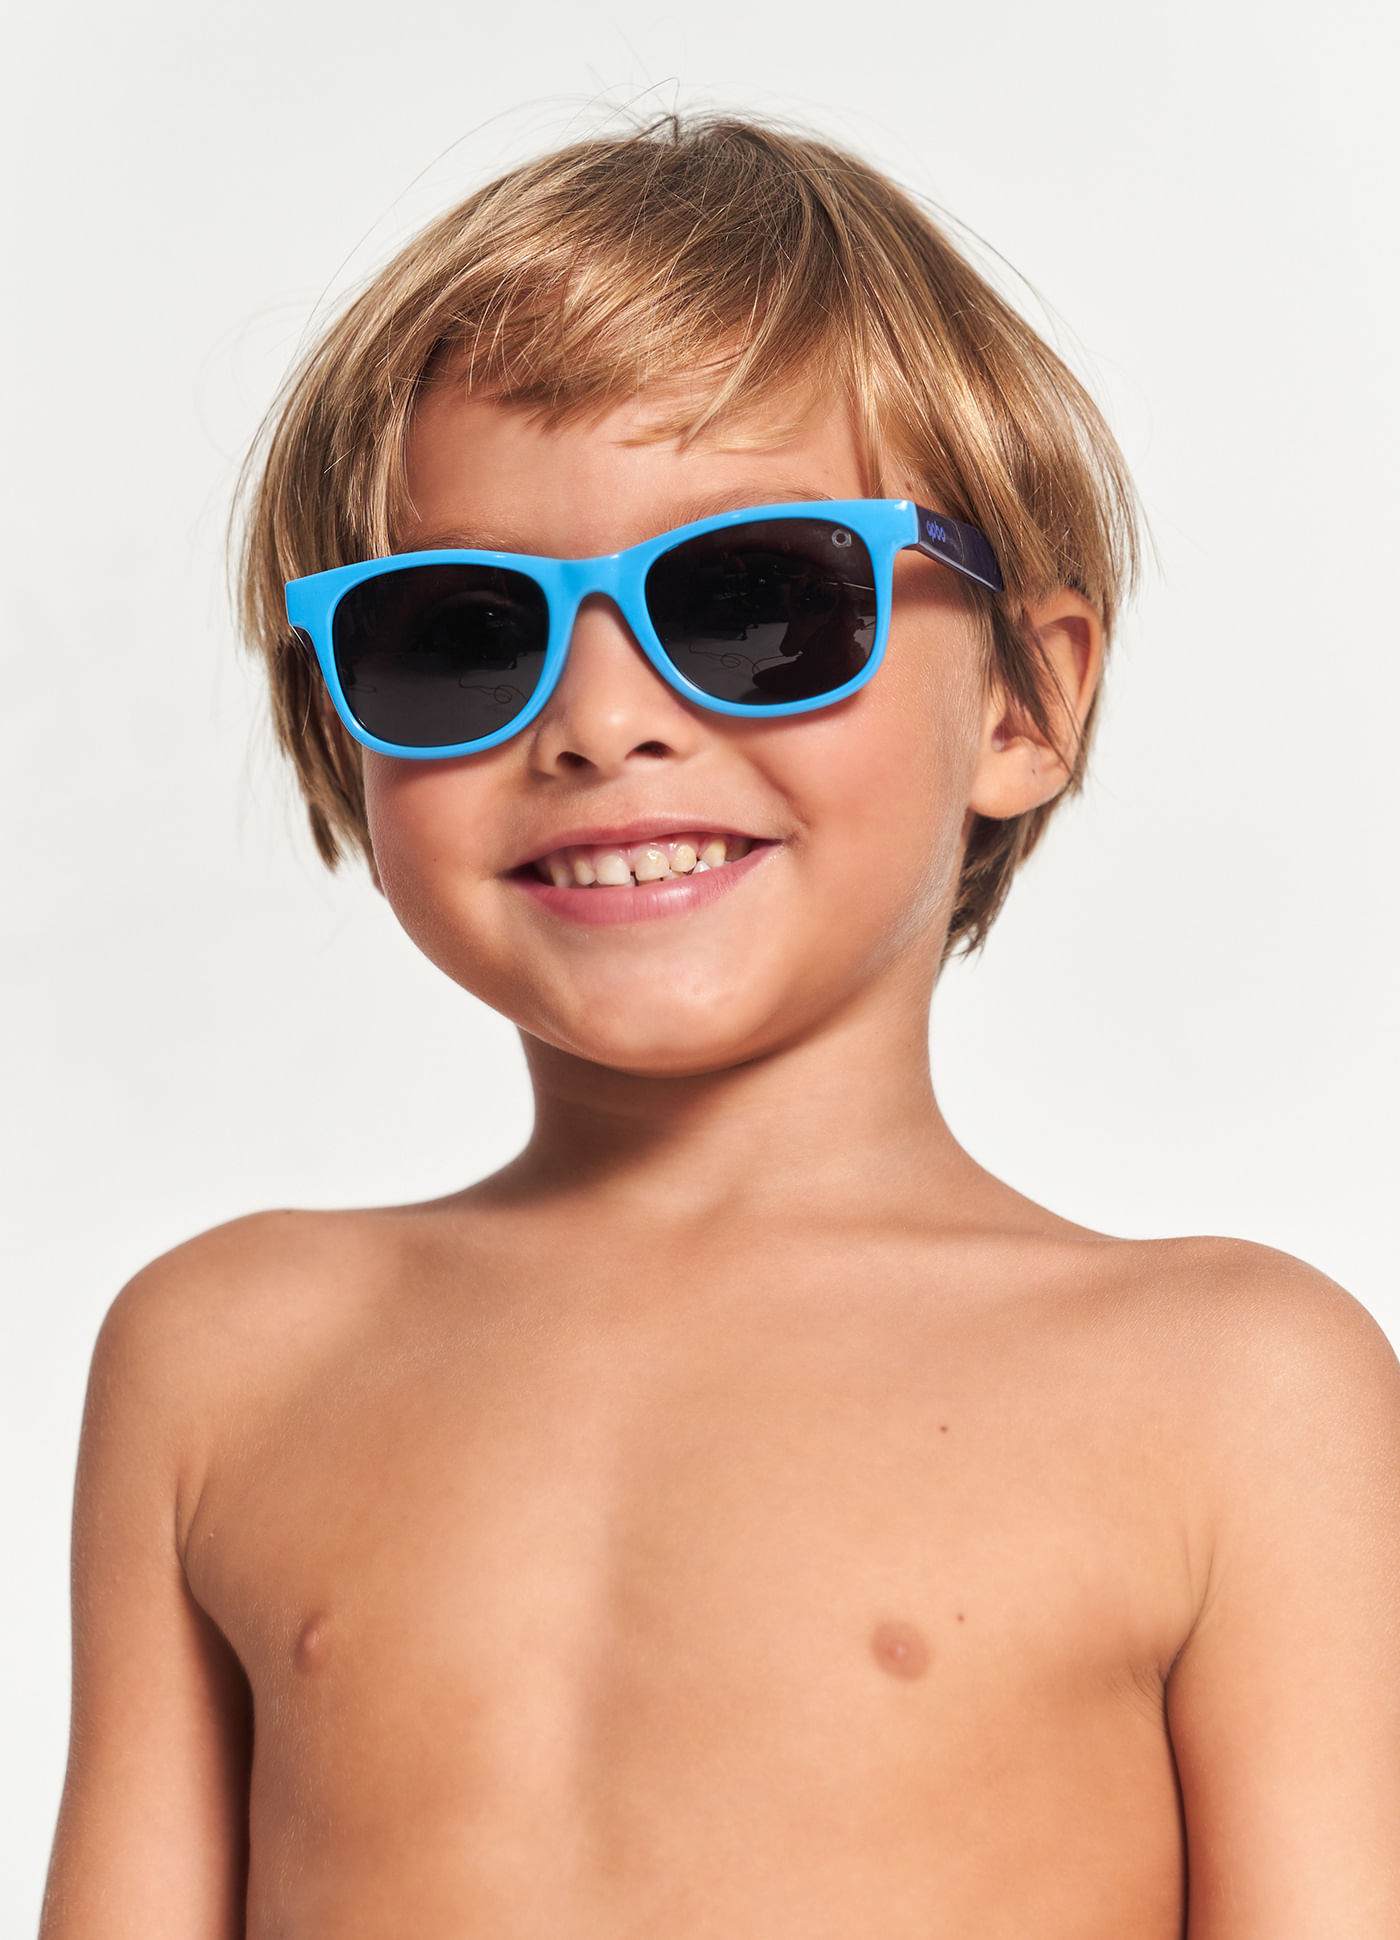 Óculos De Sol Infantil Azul Menino Cobra D'água - Quadrado